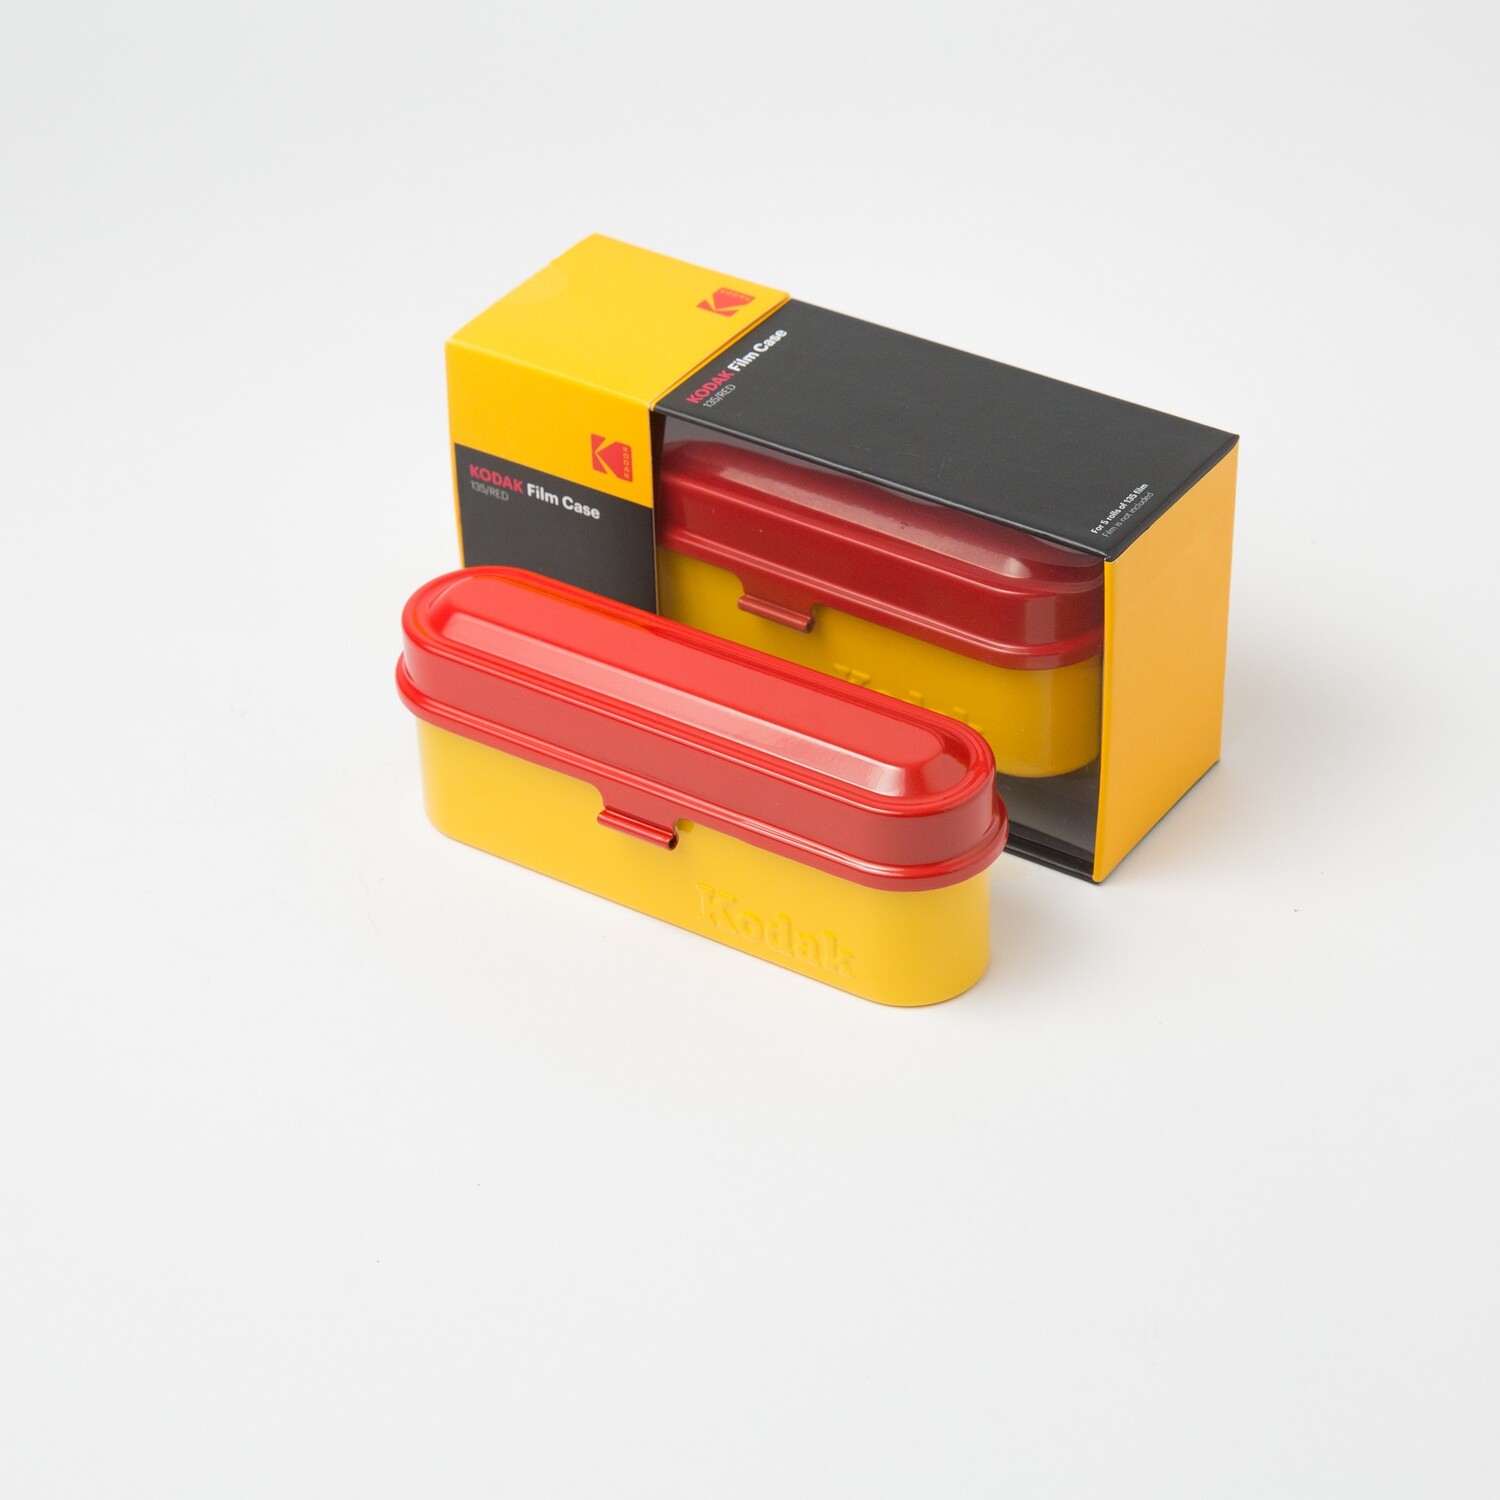 Kodak Steel 35mm Film Case [Red Lid/Yellow Body]